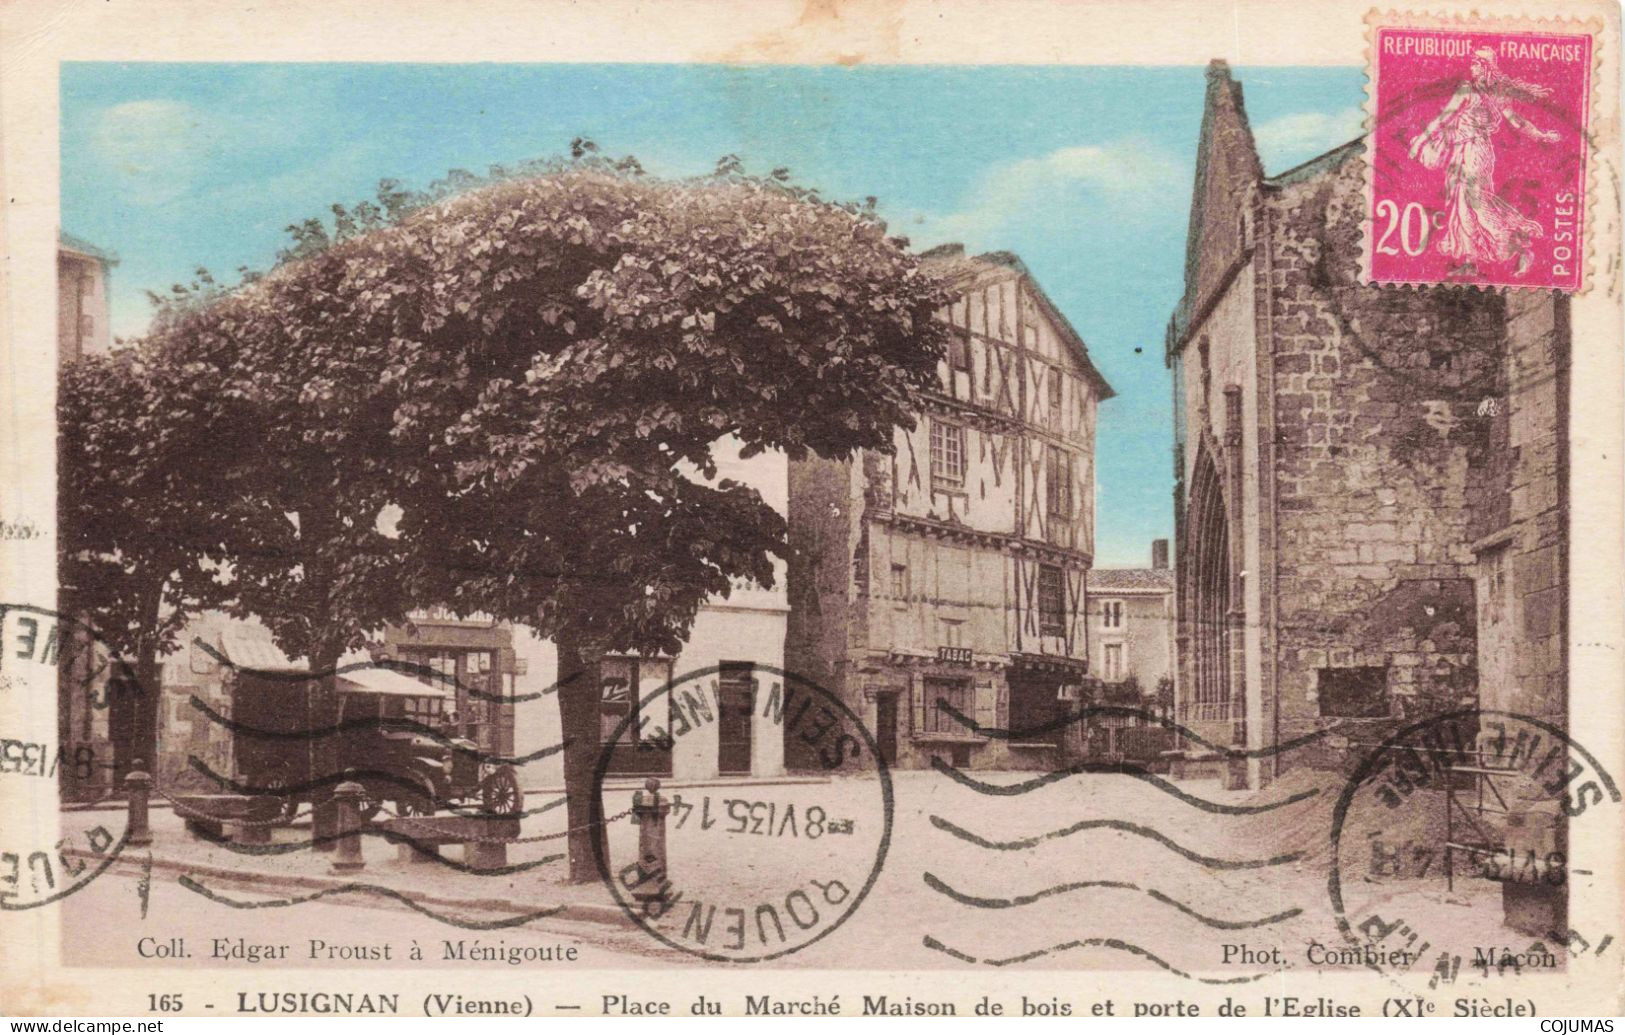 86 - LUSIGNAN - S14000 - Place Du Marché Maison De Bois Et Porte De L'Eglise - Automobile - L23 - Lusignan